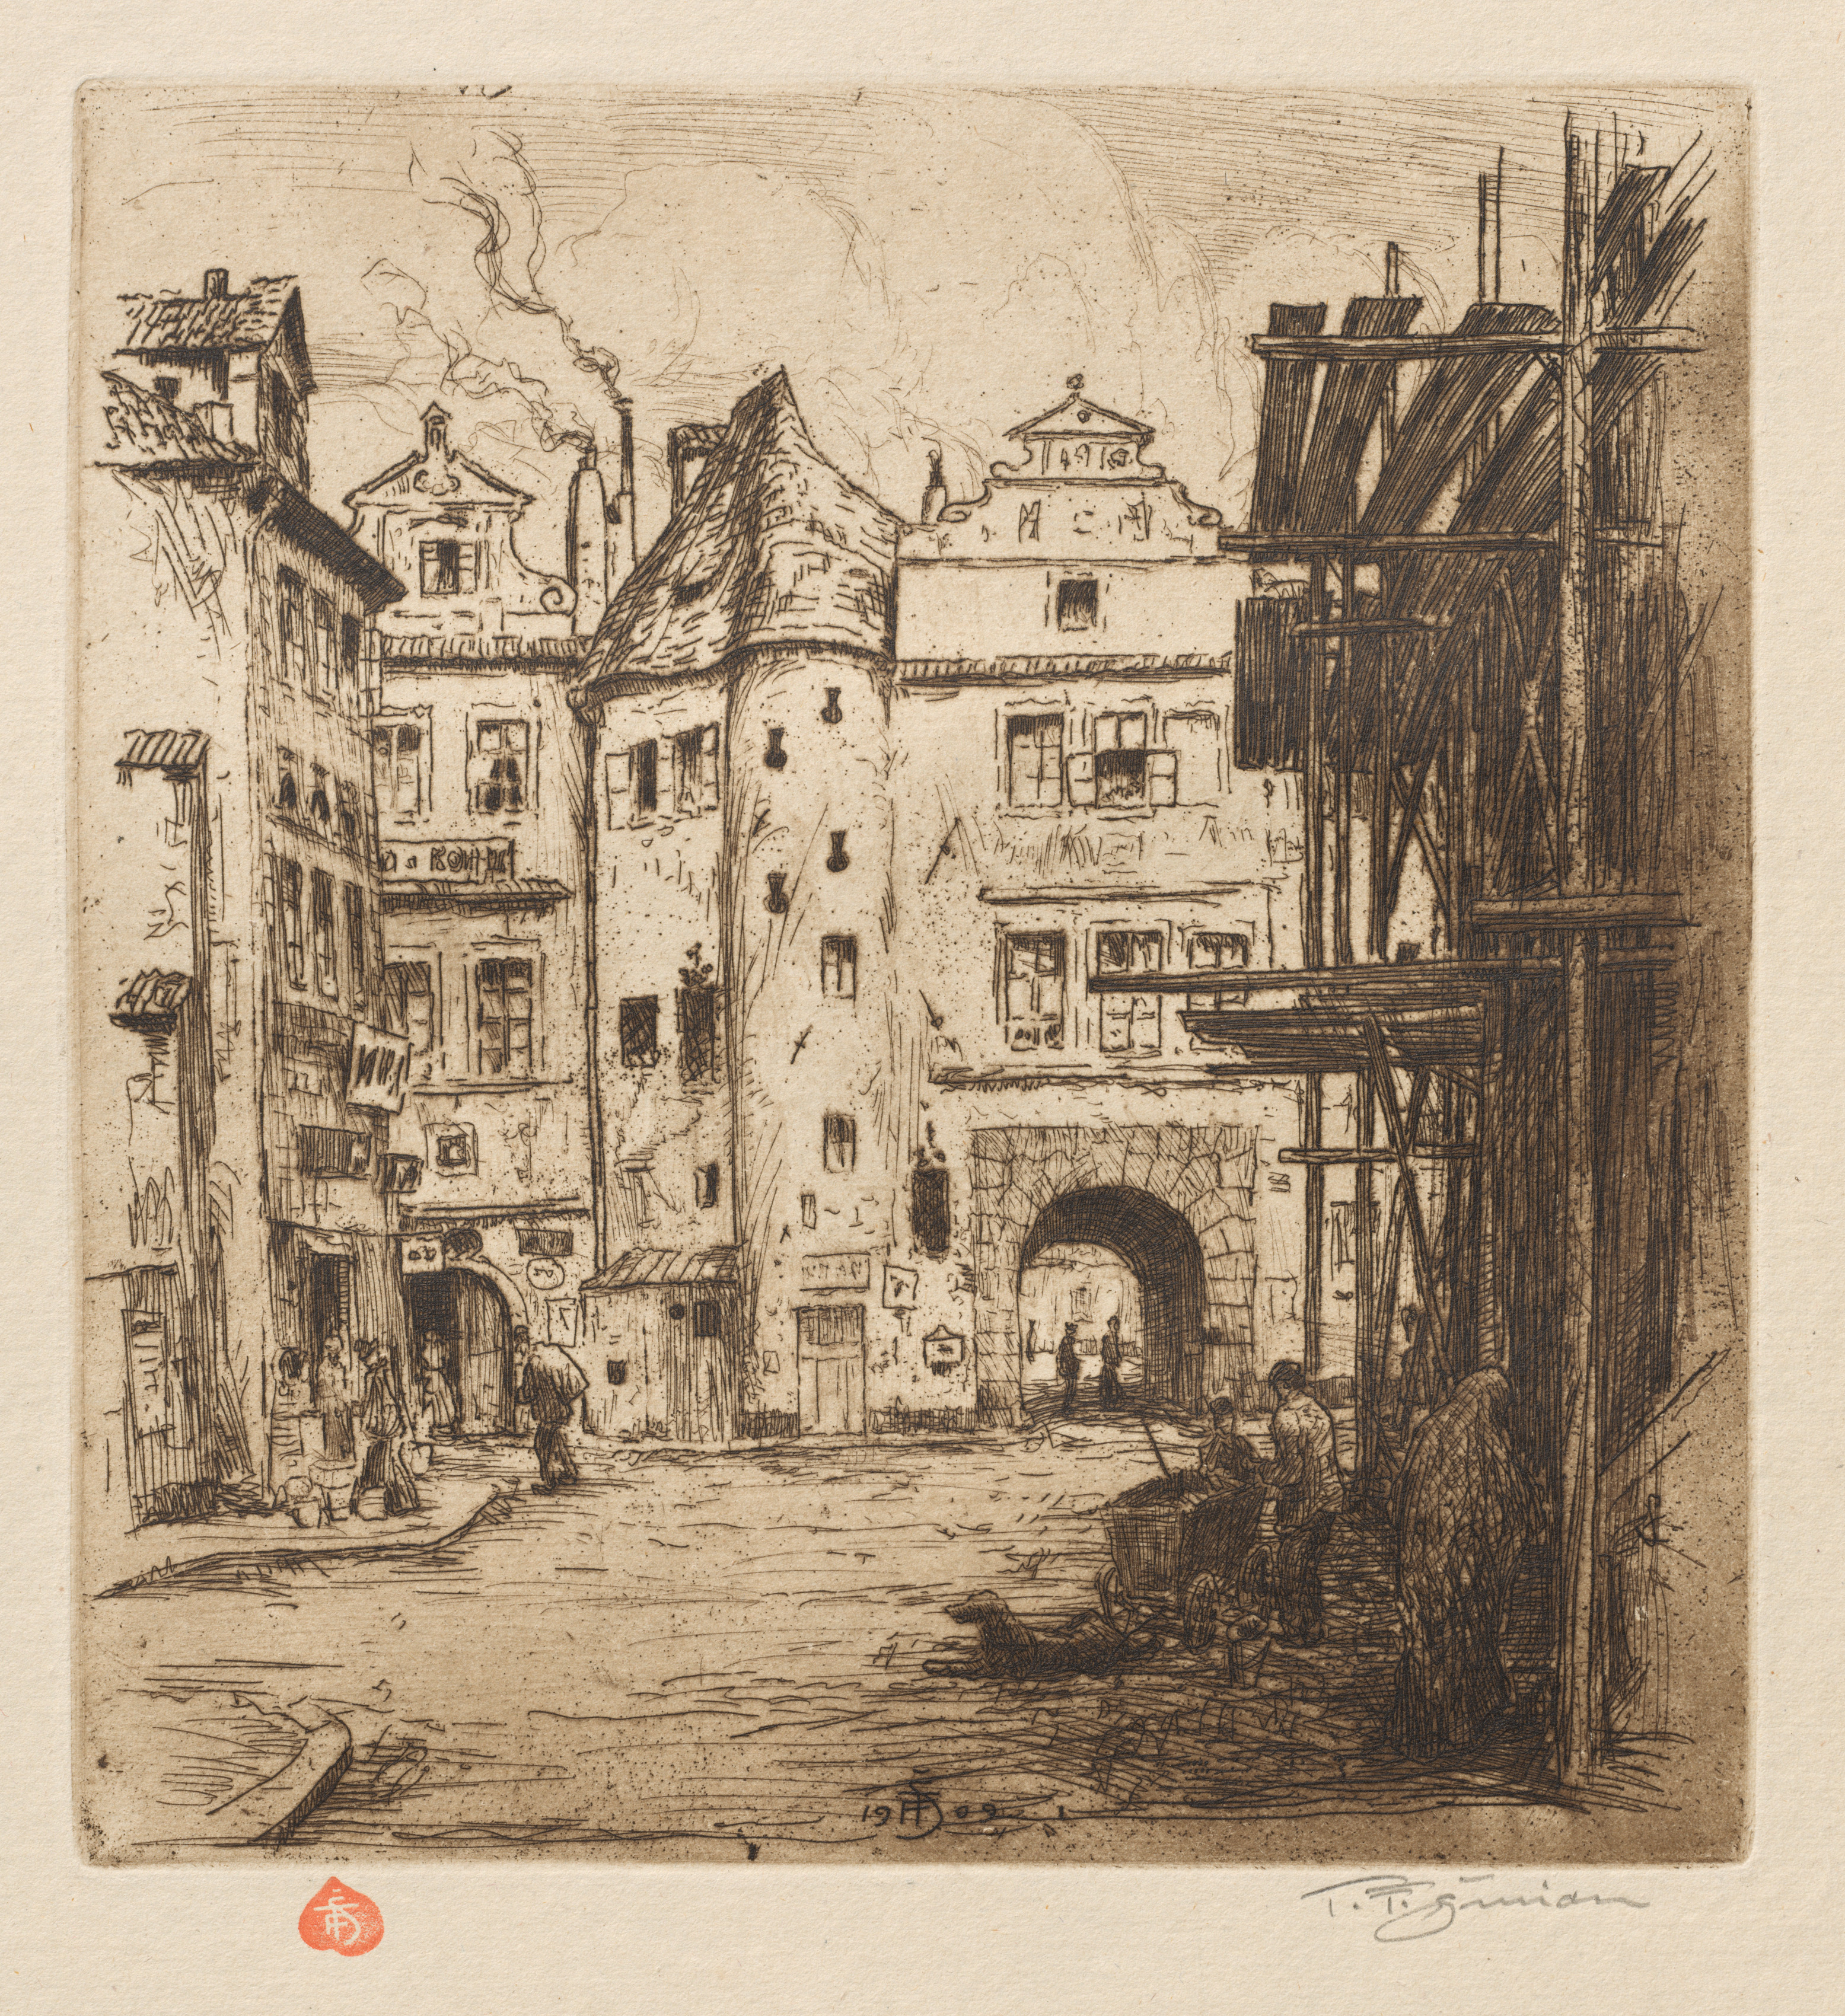 Prague: Vingt Cinq Eaux-Fortes Originales: Plate 5, Entrée de la Cour de Týn 